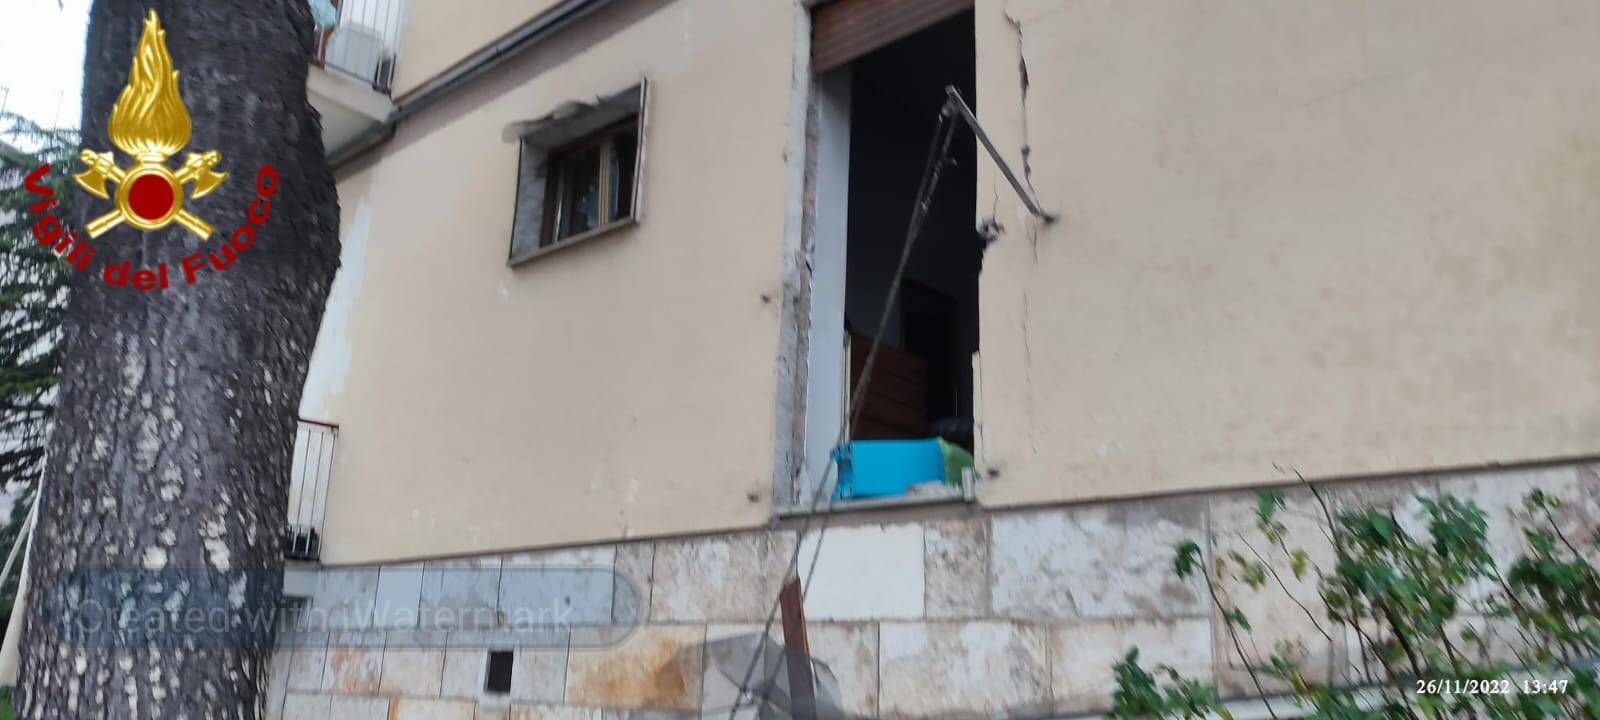 Esplosione in una palazzina, sette feriti a Matera: due gravi trasferiti al Centro grandi ustionati di Bari